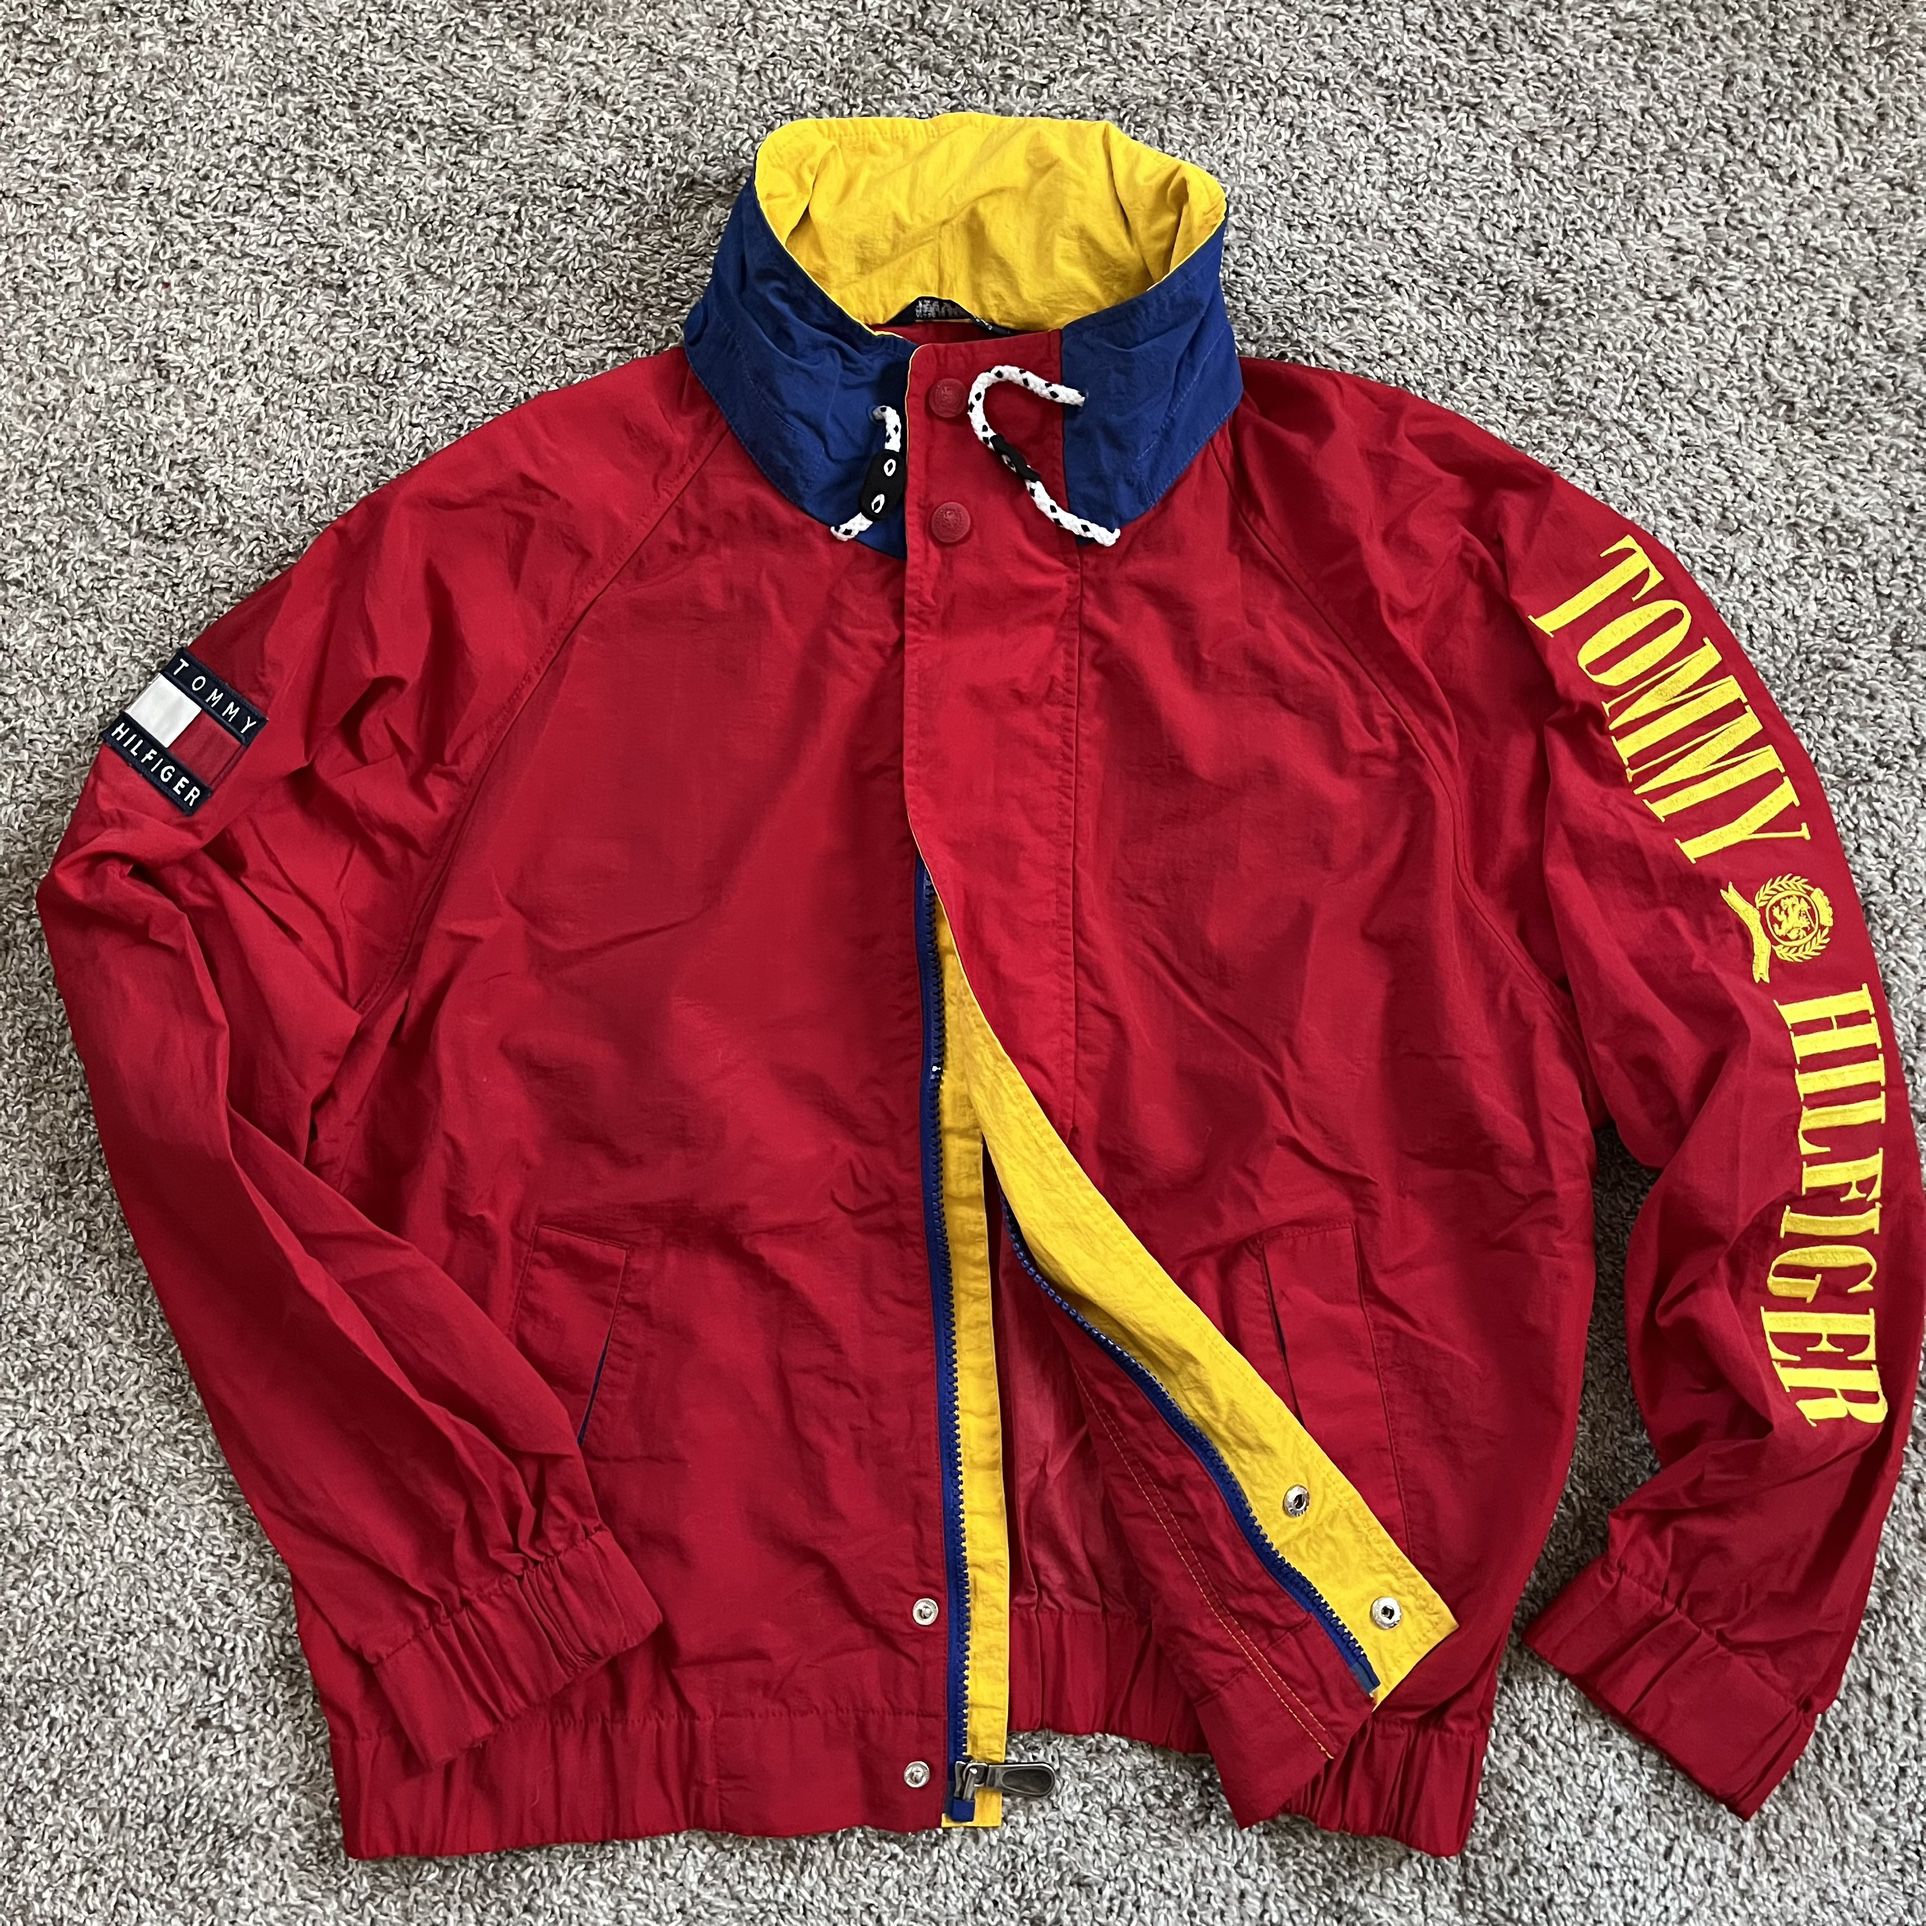 Tommy Hilfiger Jacket Size Large 90’s Vintage Rare